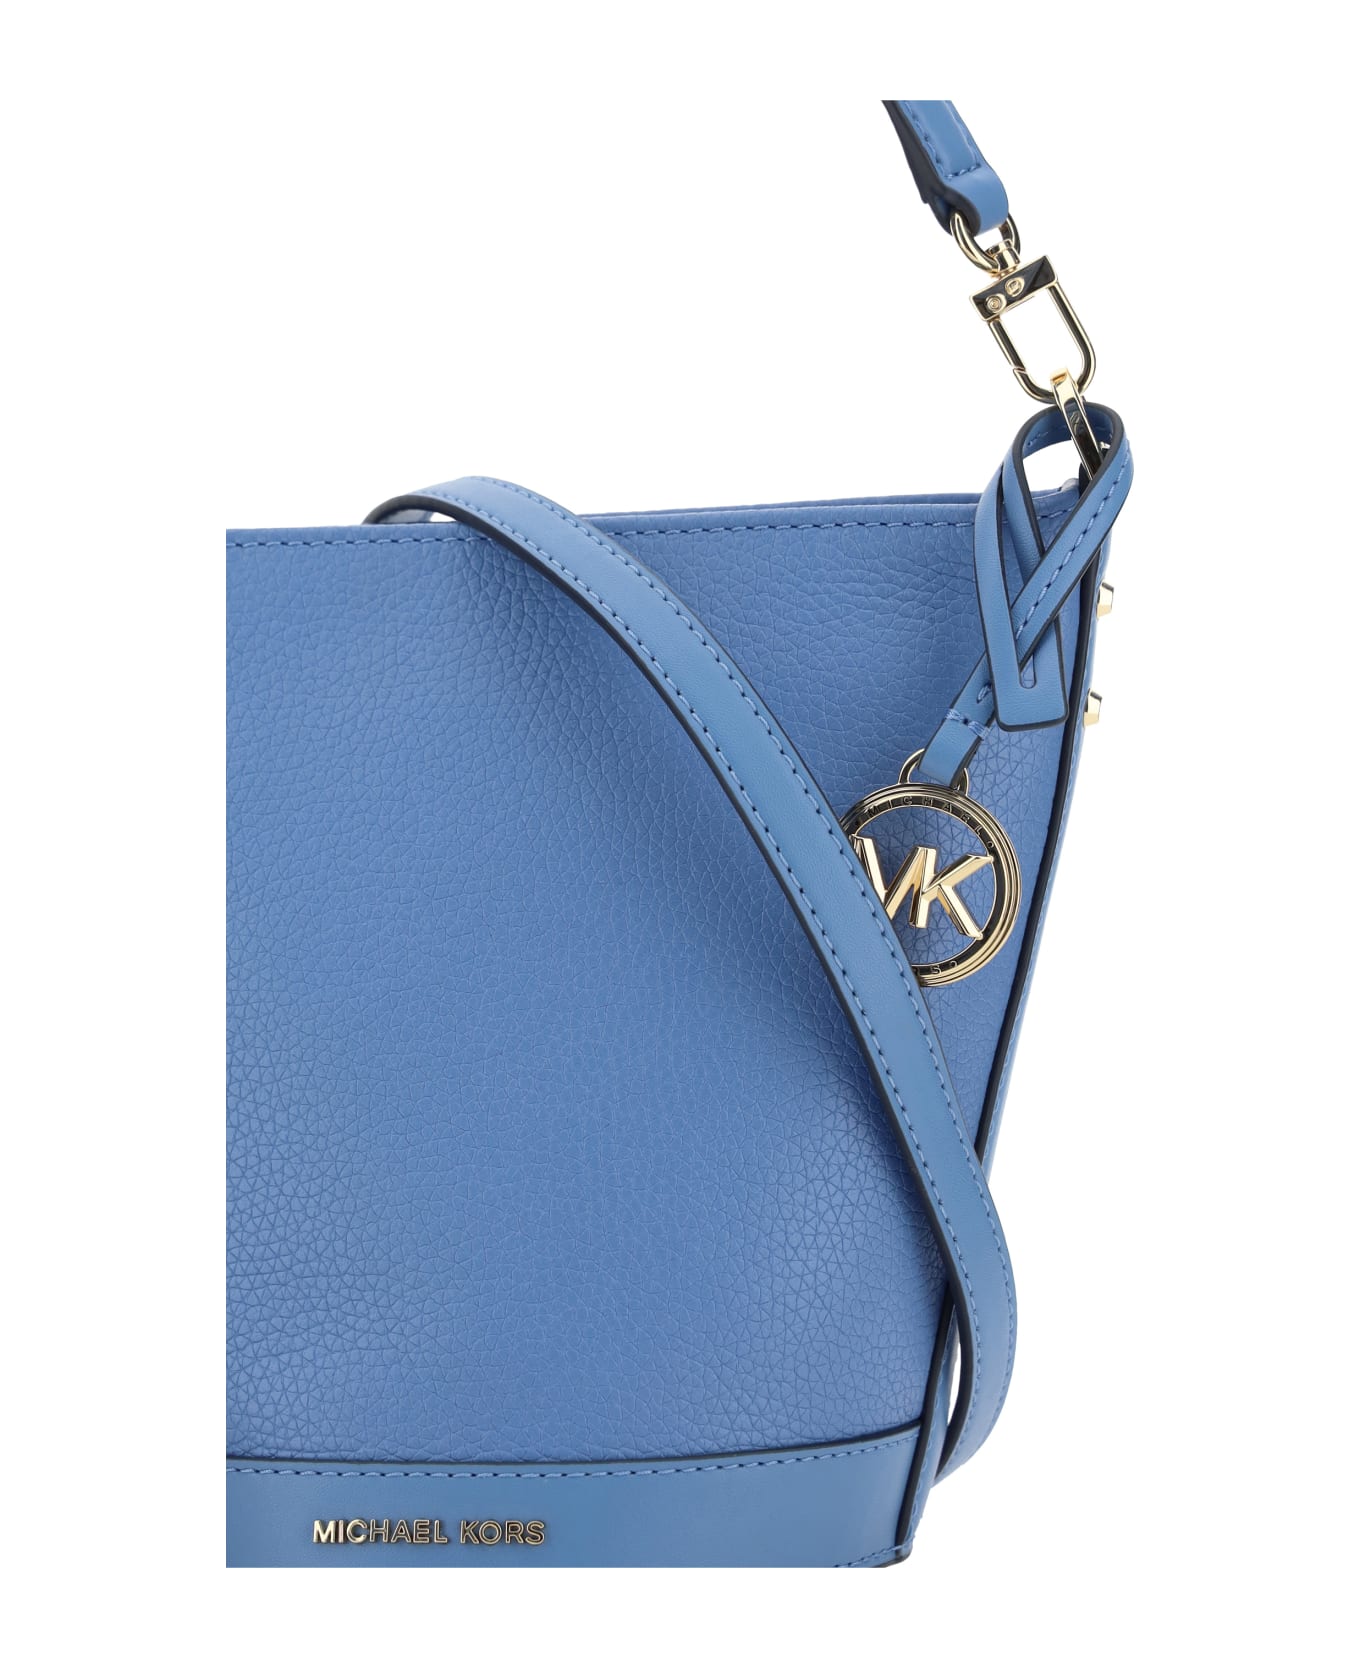 Michael Kors Townsend Bucket Bag - Light Blue